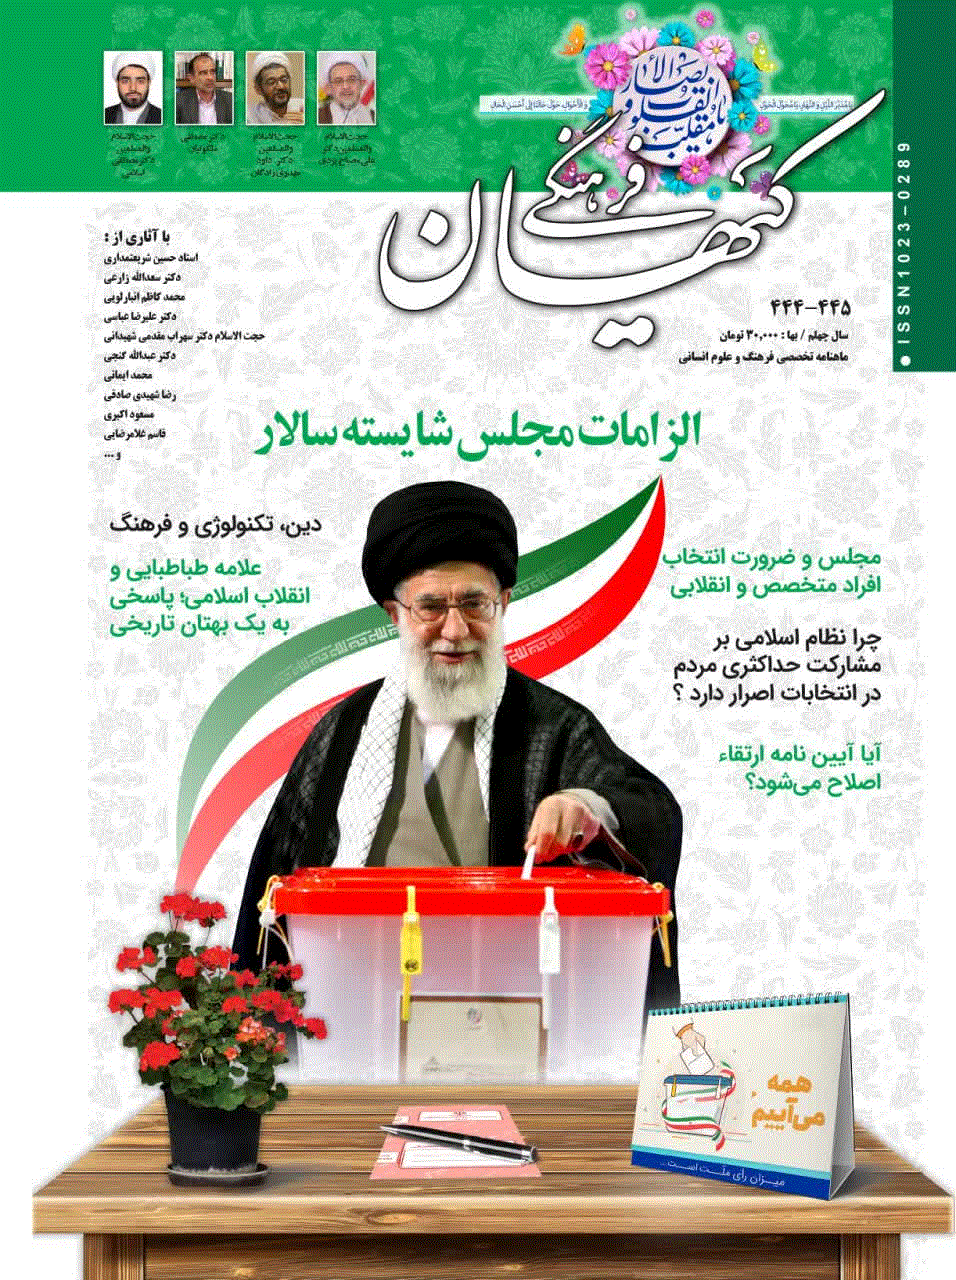 کیهان فرهنگی - آبان 1382 - شماره 205